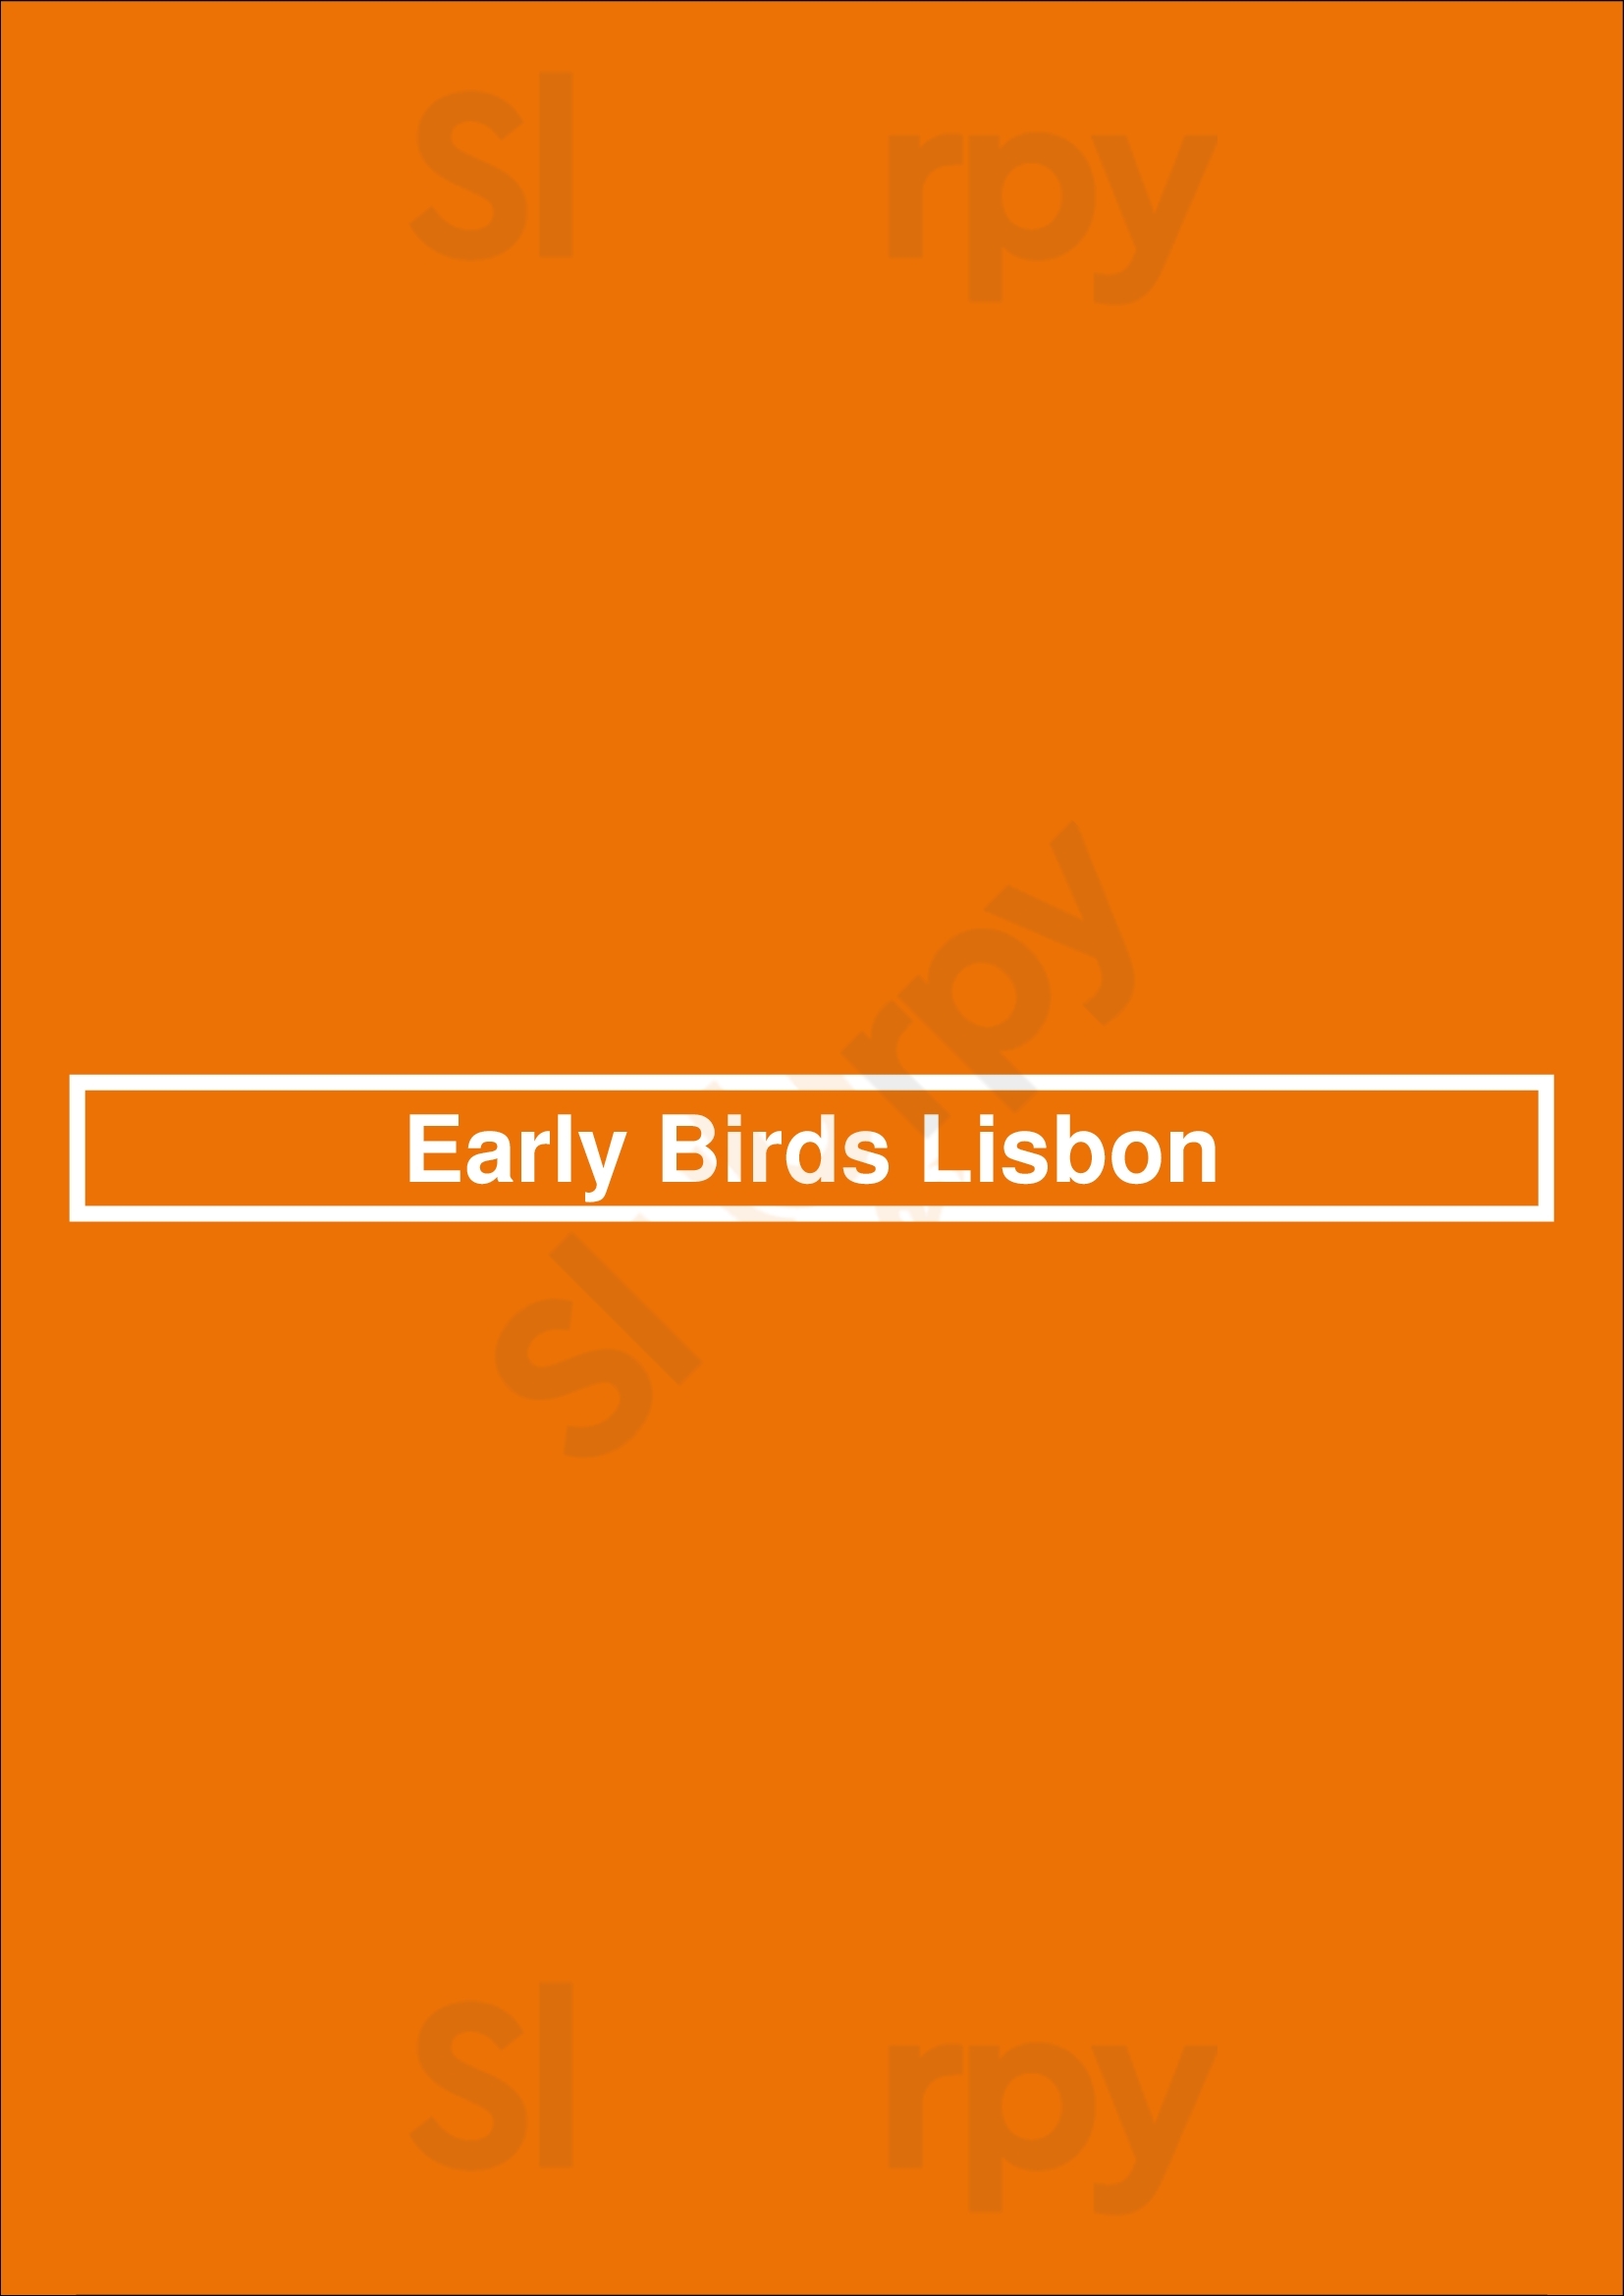 Early Birds Lisbon Lisboa Menu - 1